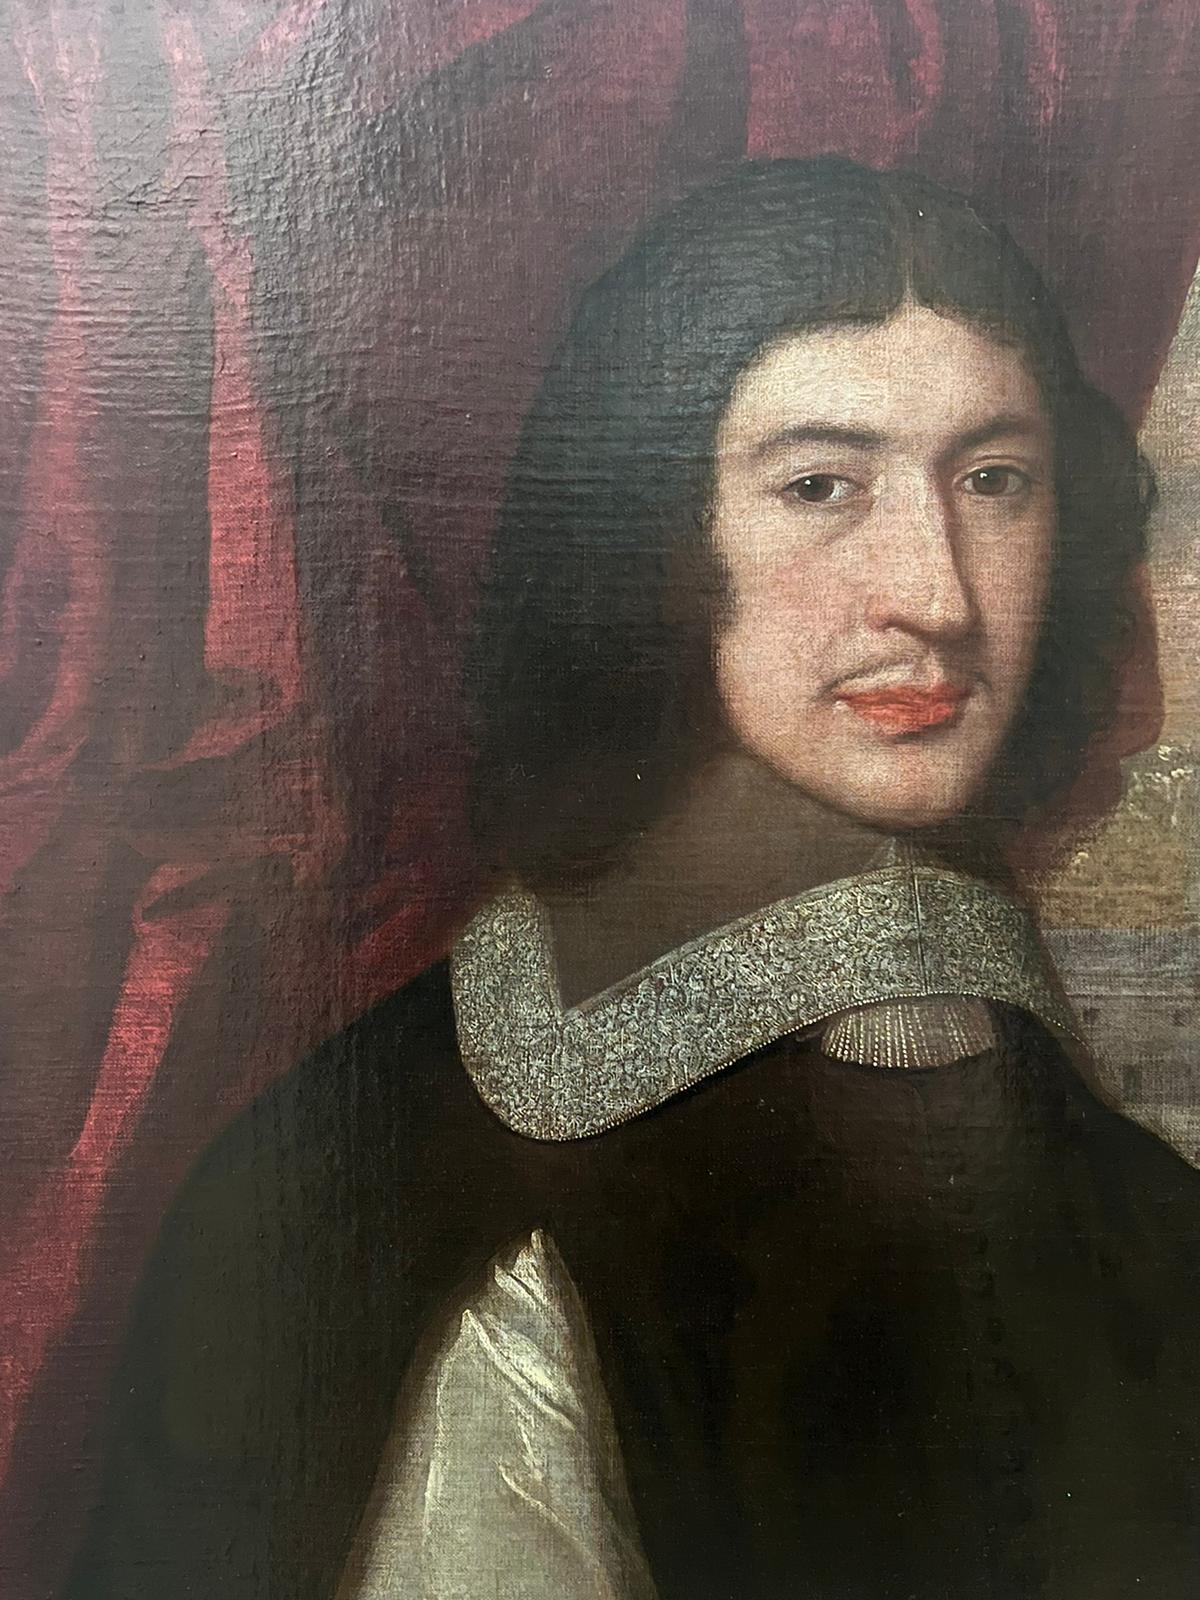 Porträt von Thomas Collard (Rektor von Withycombe, Somerset 1670-1691)
Die in der Ferne abgebildete Stadt ist vermutlich Antwerpen. 
das Porträt wird historisch dem Umkreis von David des Granges (britisch/französisch 1611-1672)